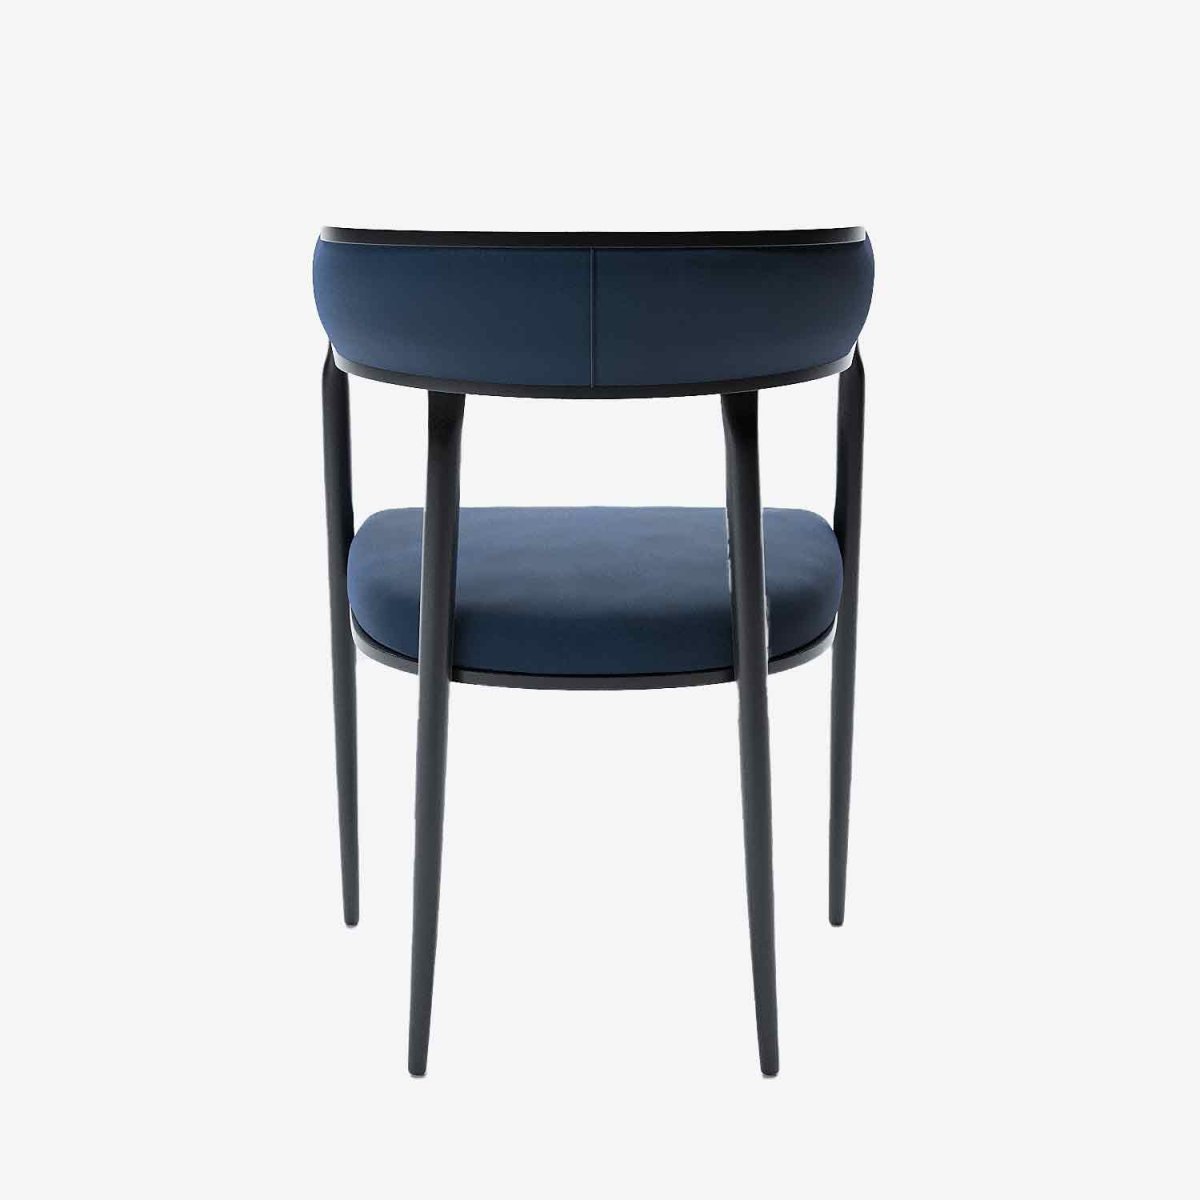 Chaise de salle à manger design dossier arrondi velours bleu marine Aurore Potiron Paris